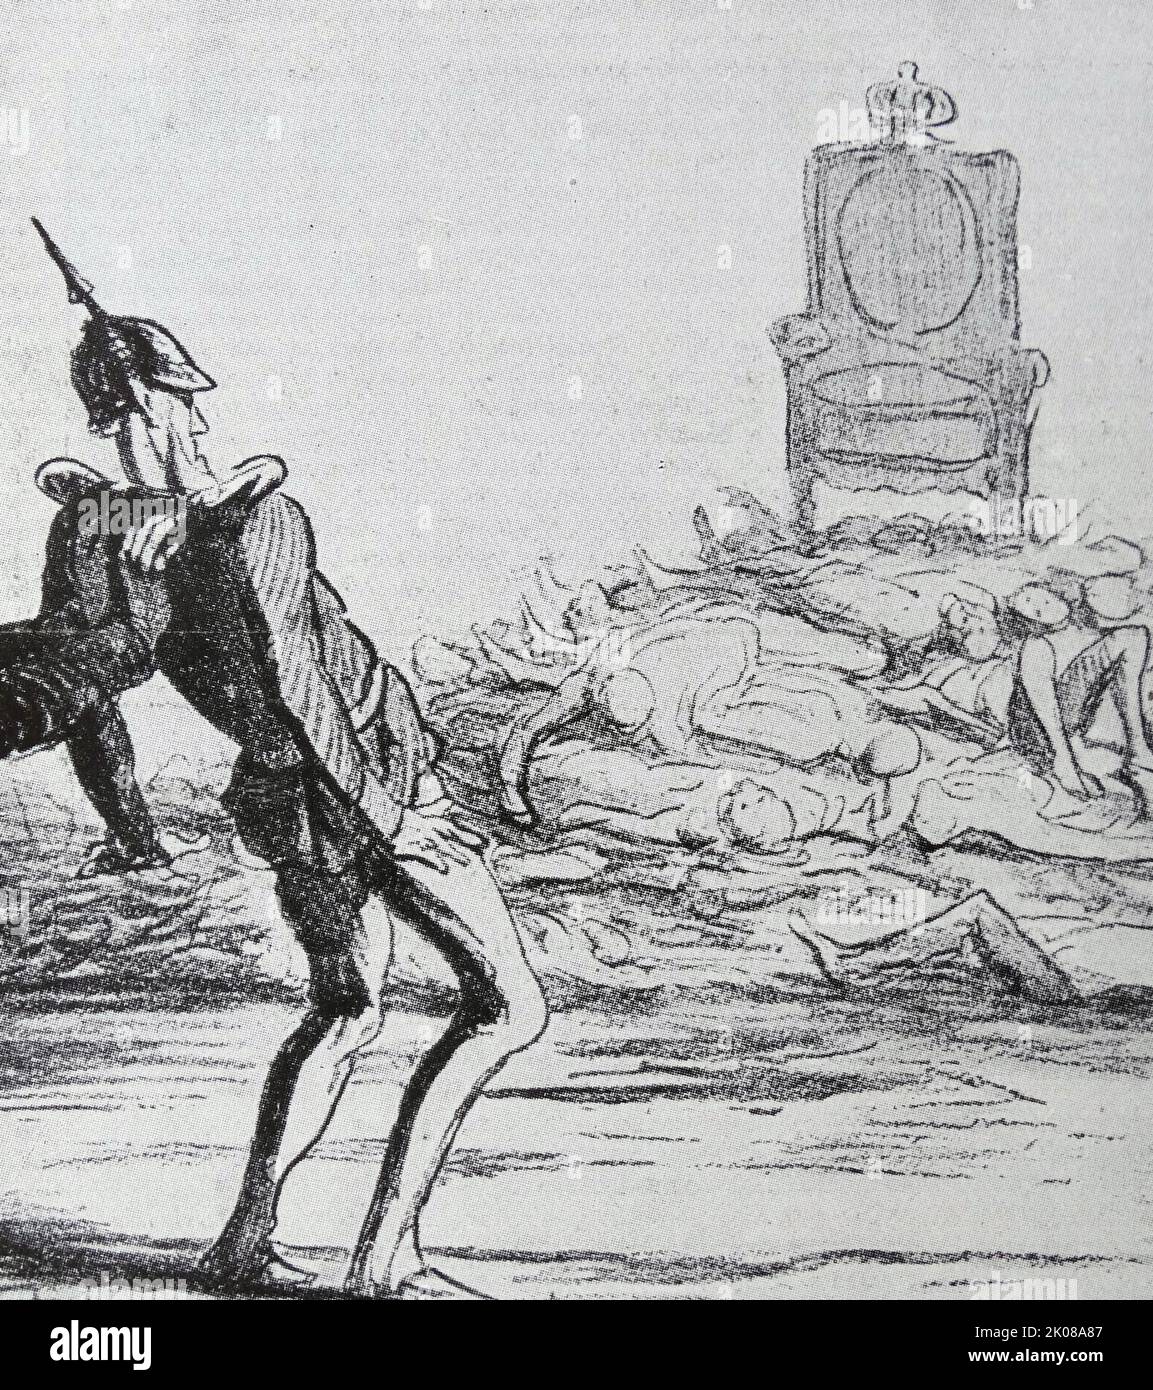 Caricature de Léopold, Prince de Hohenzollern (Léopold Stephan Karl Anton Gustav Eduard Tassilo Furst von Hohenzollern; 22 septembre 1835 - 8 juin 1905) était le chef de la branche souabe de la Maison de Hohenzollern, et joua un rôle éphémère dans la politique de puissance européenne, dans le cadre de la guerre franco-prussienne Banque D'Images